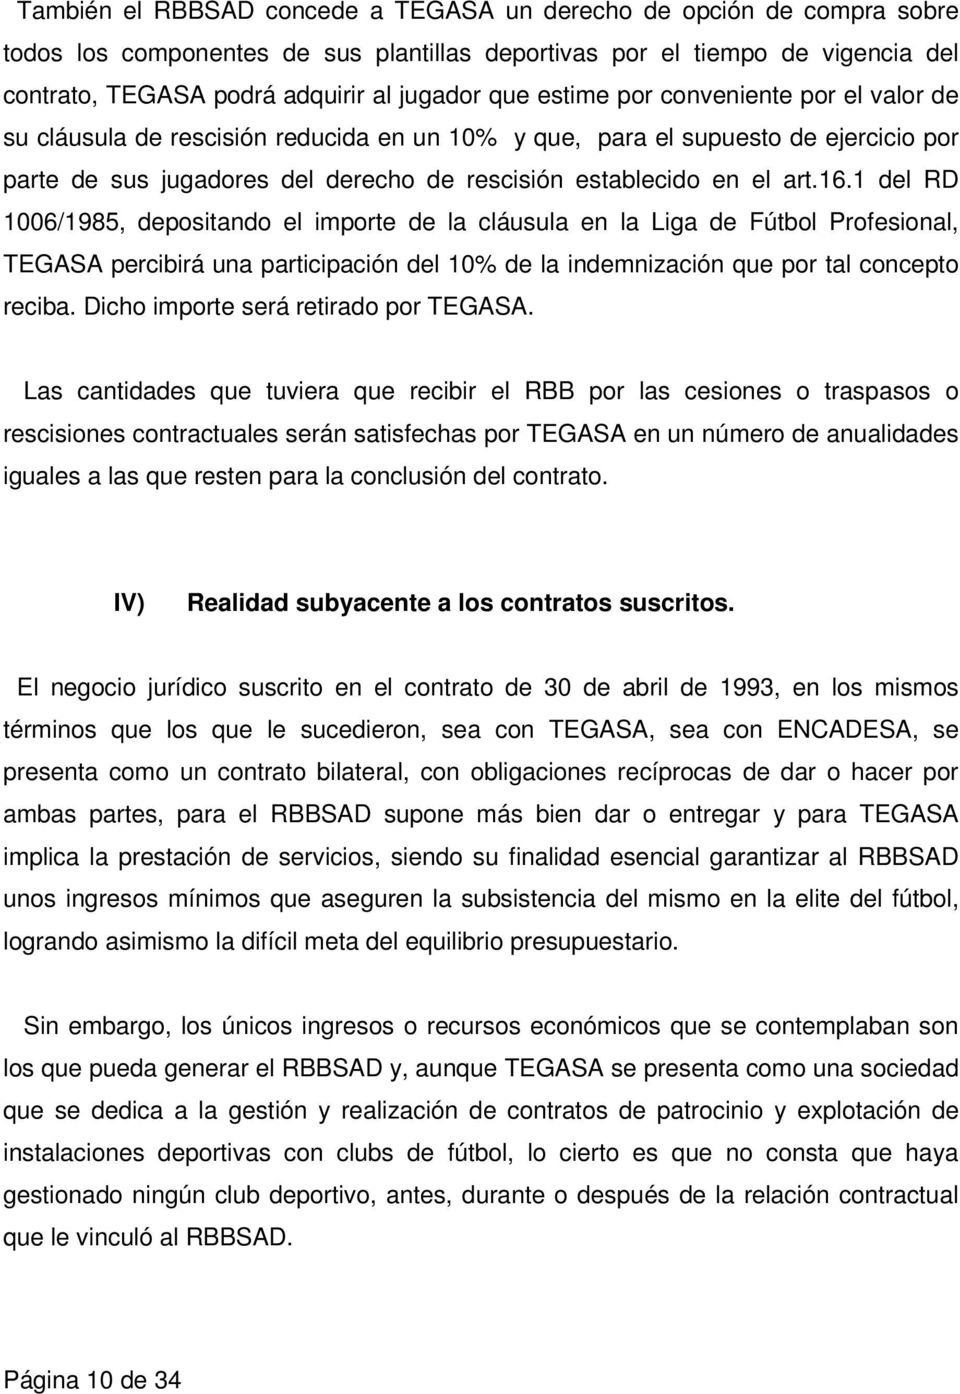 1 del RD 1006/1985, depositando el importe de la cláusula en la Liga de Fútbol Profesional, TEGASA percibirá una participación del 10% de la indemnización que por tal concepto reciba.